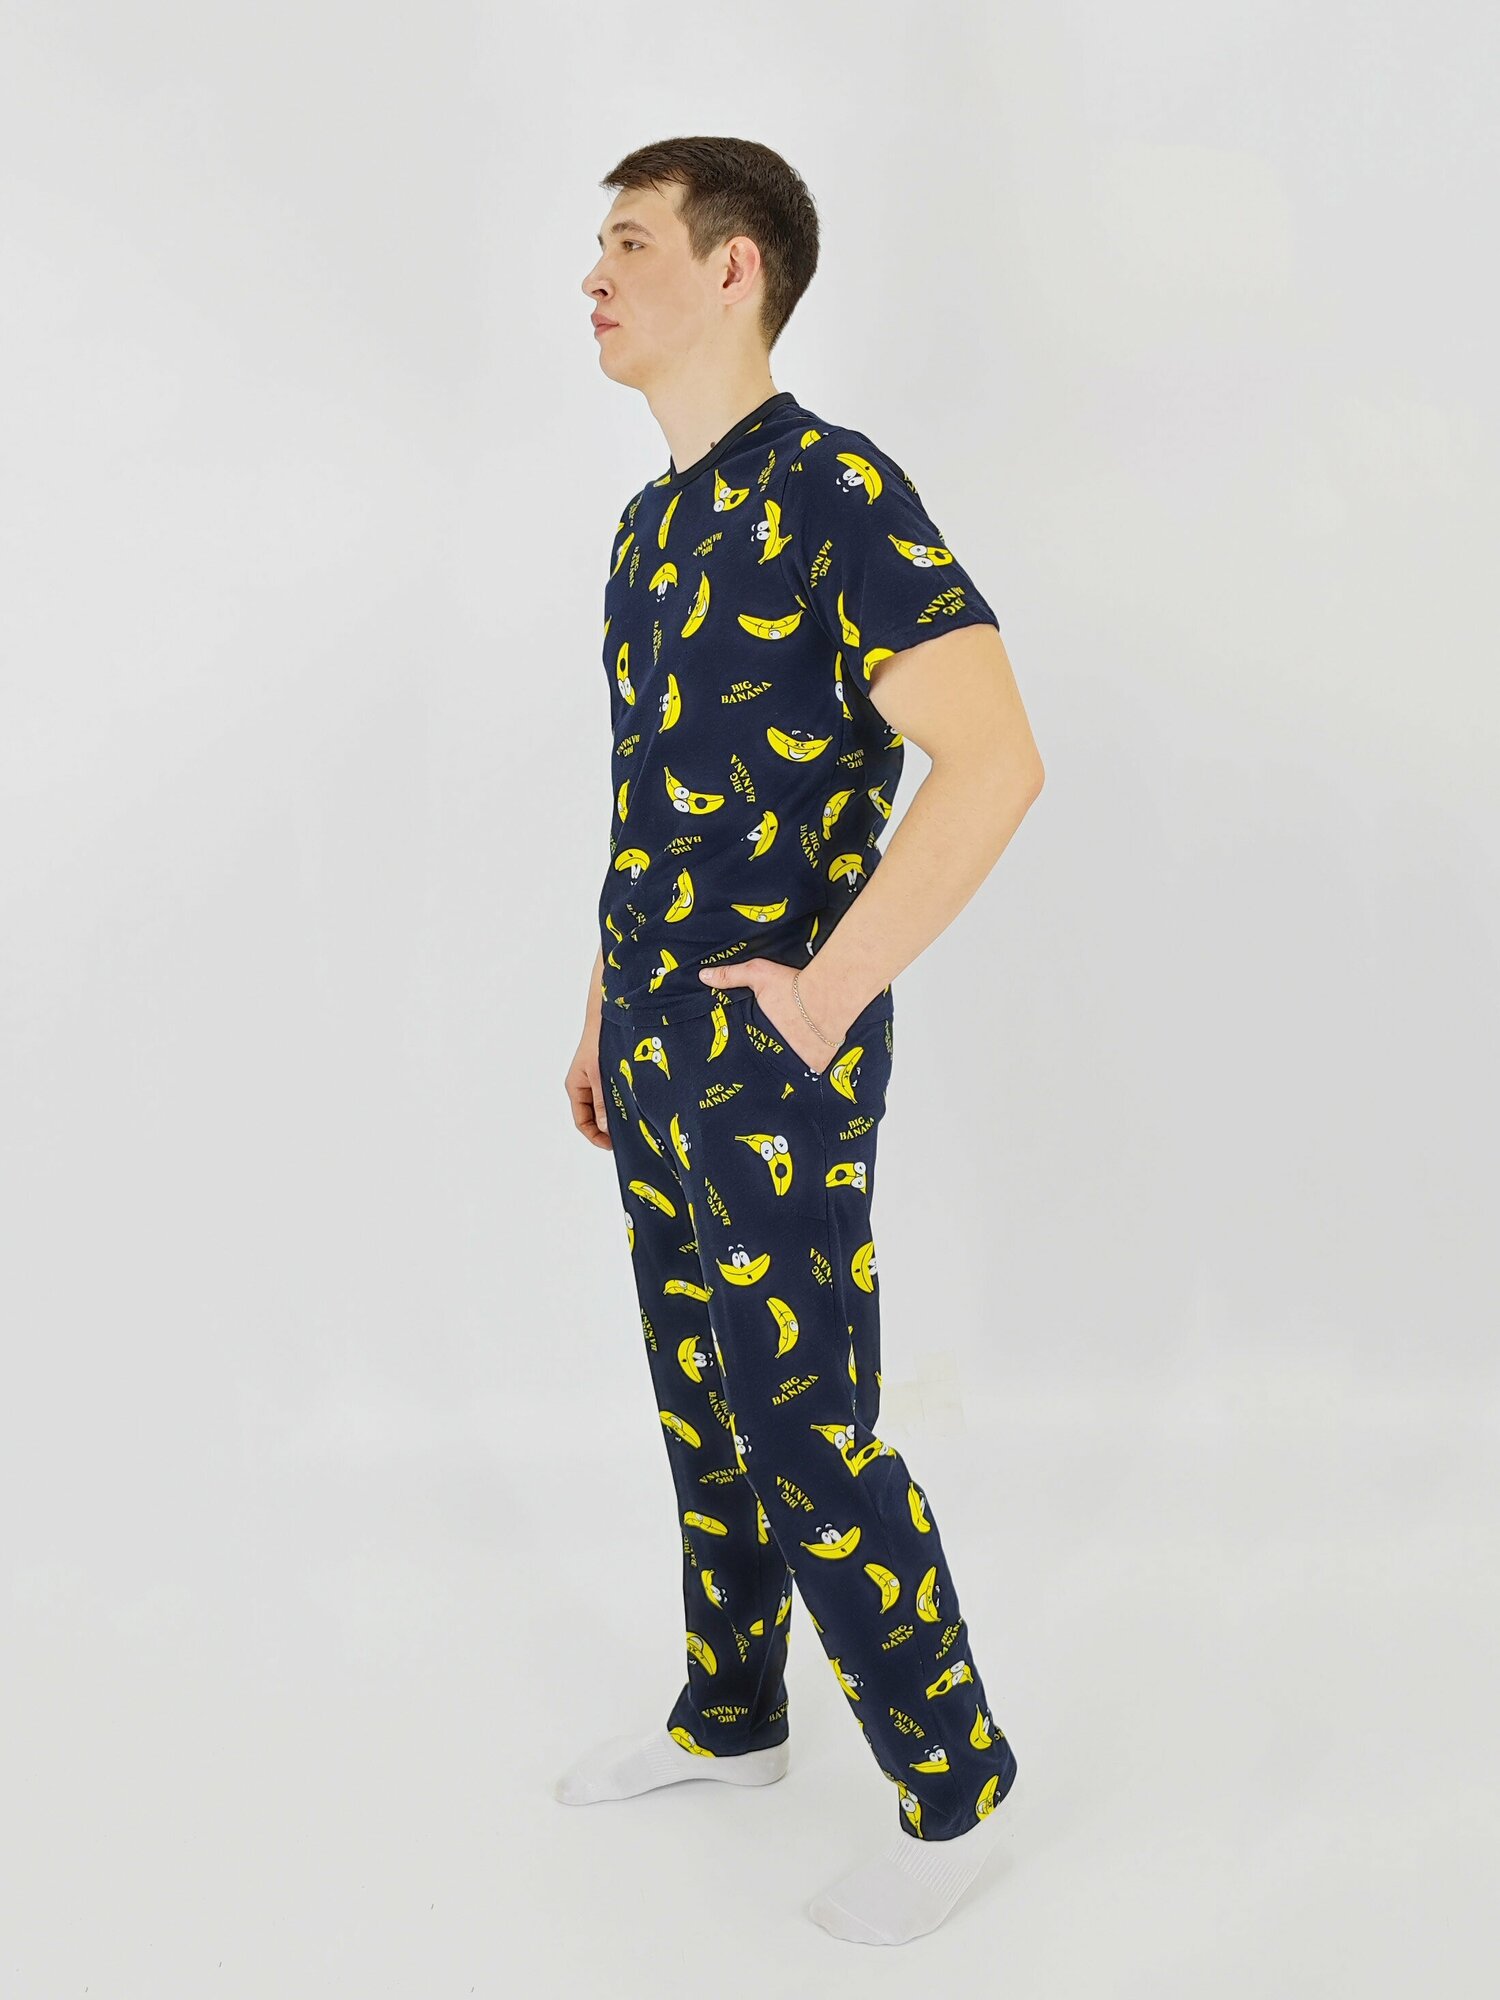 Мужская пижама, мужской пижамный комплект ARISTARHOV, Футболка + Брюки, Бананчик, синий желтый, размер 52 - фотография № 4